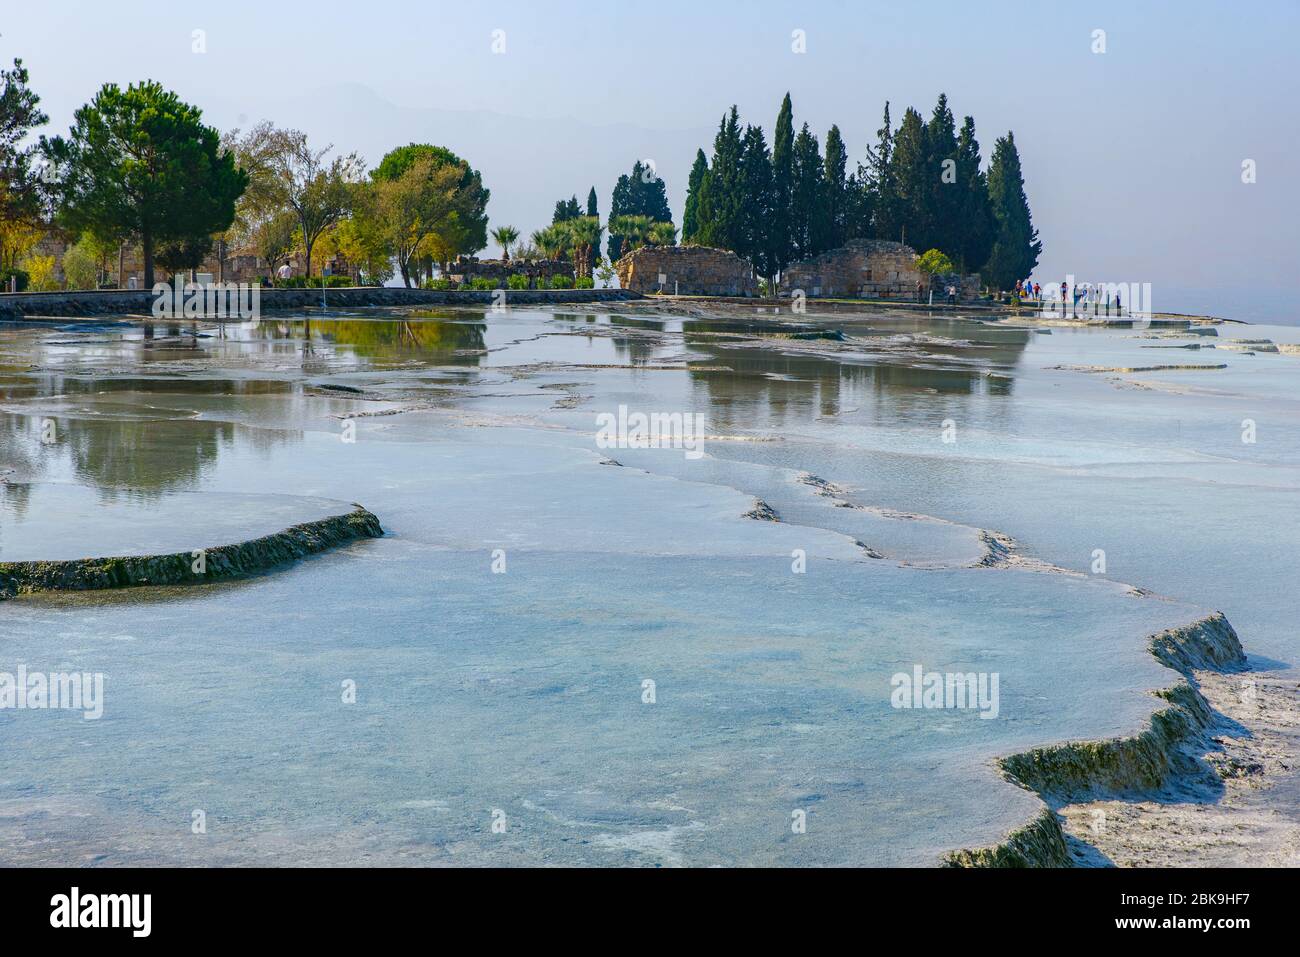 Formations et piscines en travertin à Pamukkale (château de coton), Denizli, Turquie Banque D'Images